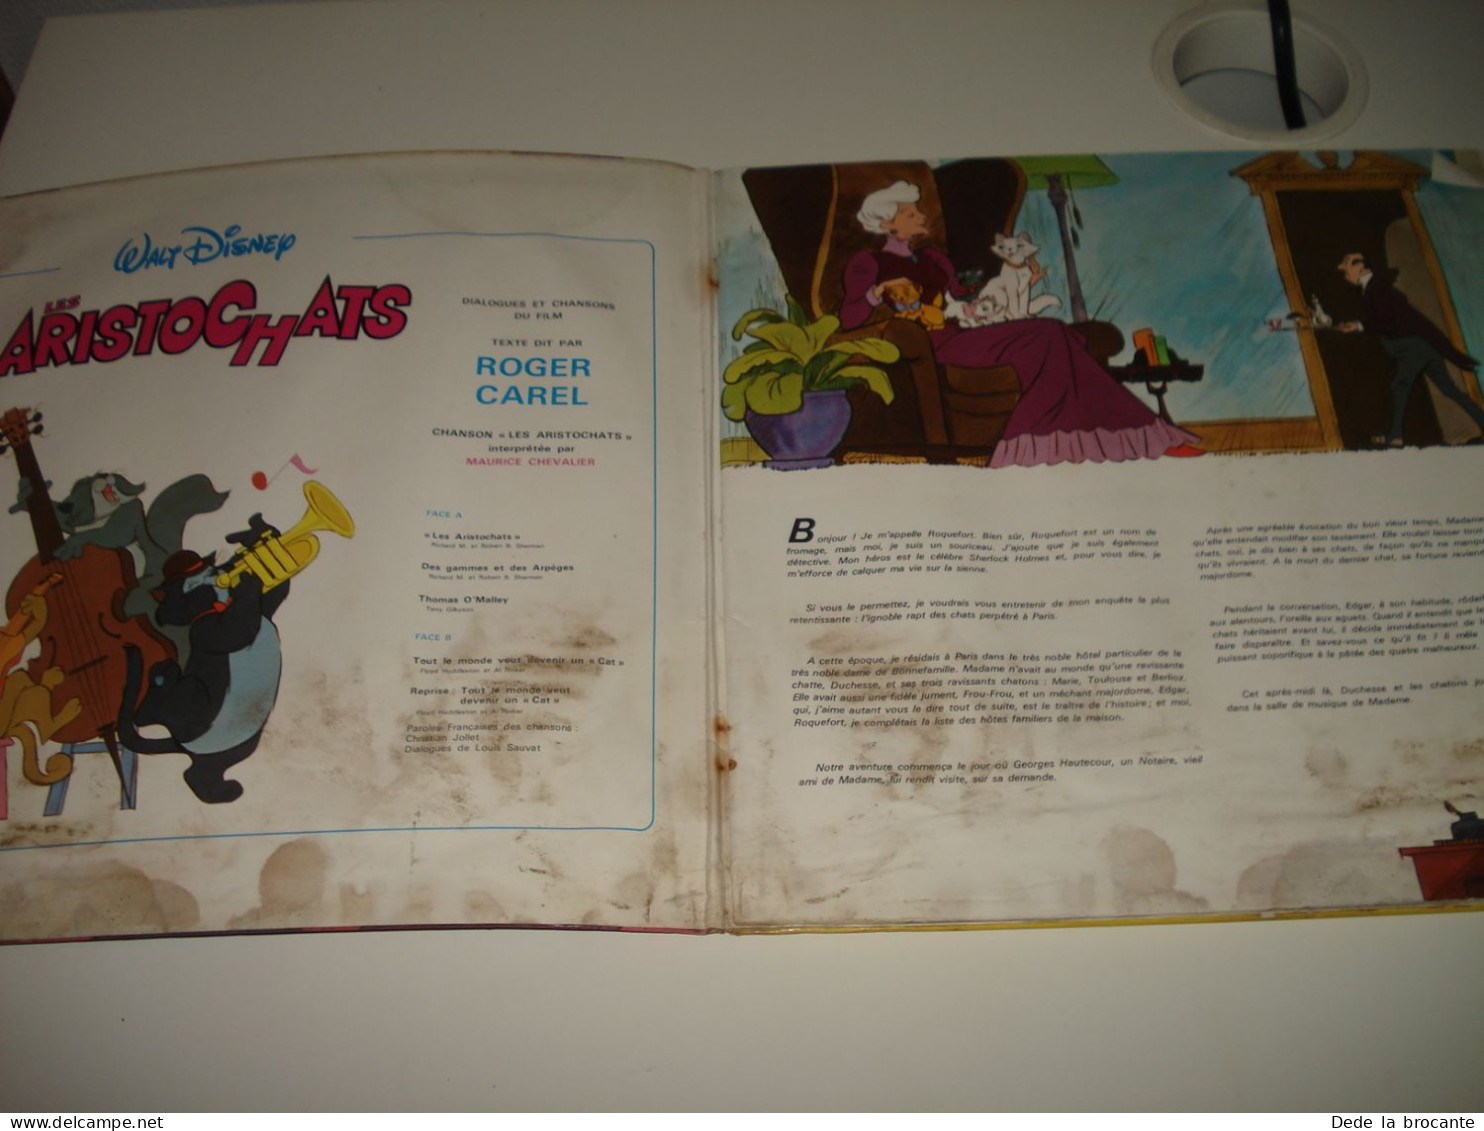 B4 / Aristochats - Roger Carel - LP - Disneyland - ST 3995 F - Fr  1971 - M/G - Enfants